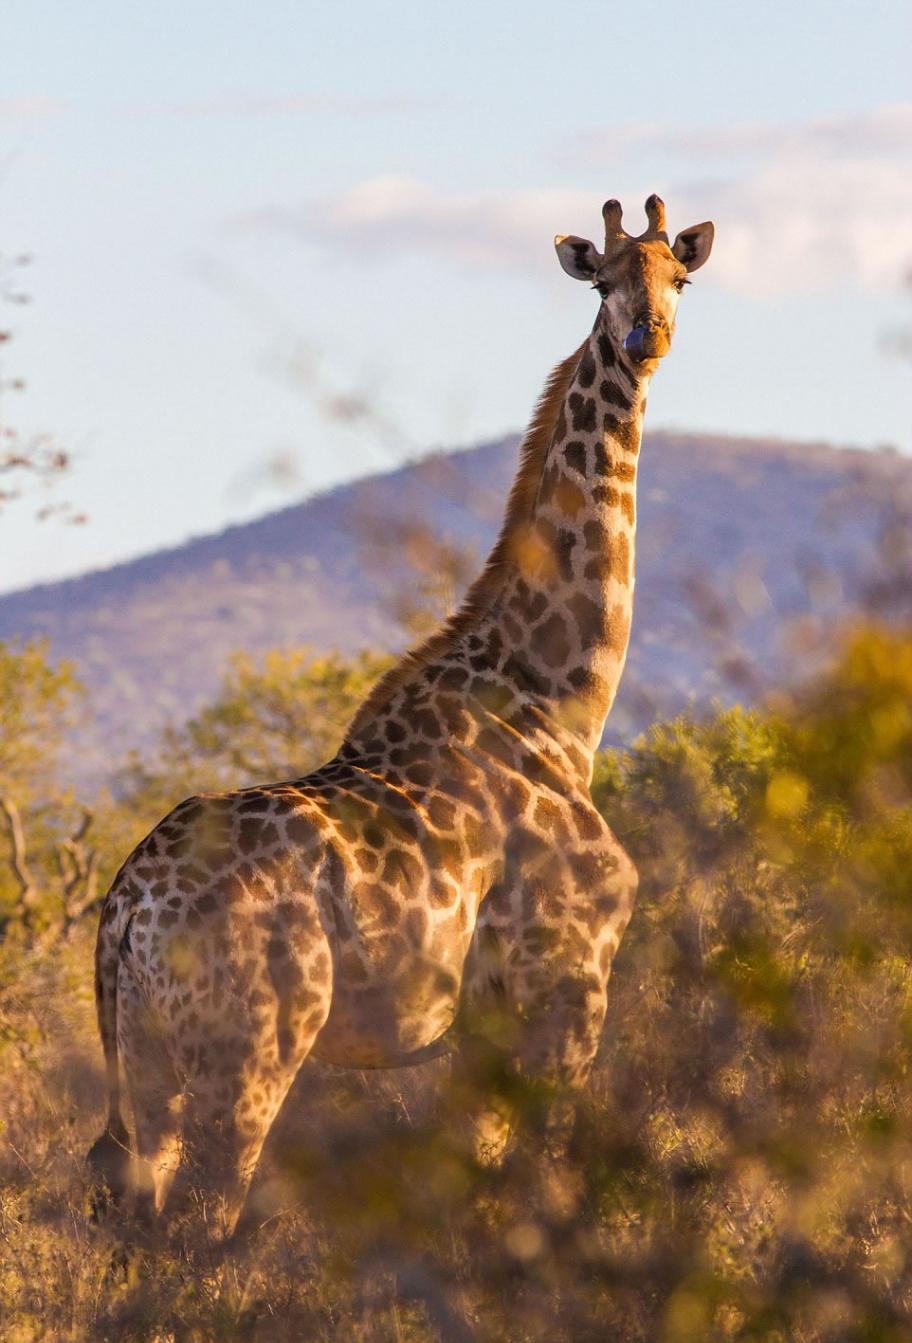 摄影师在南非拍到“筋肉长颈鹿”